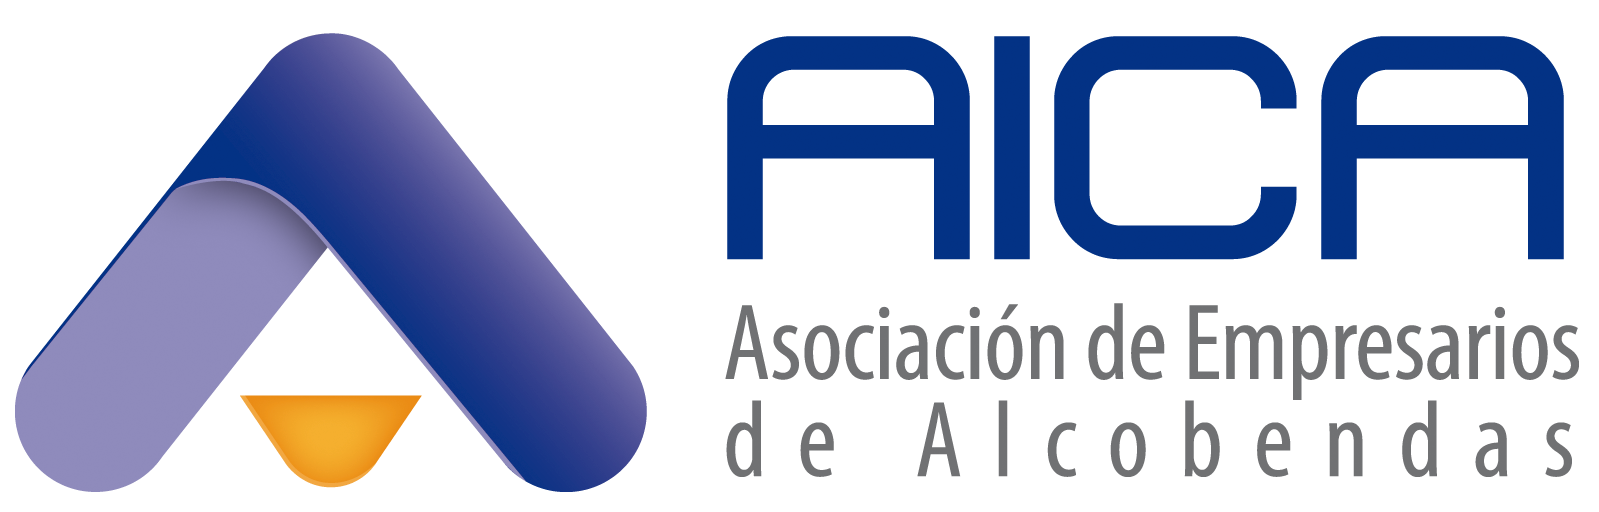 Logo AICA horizontal